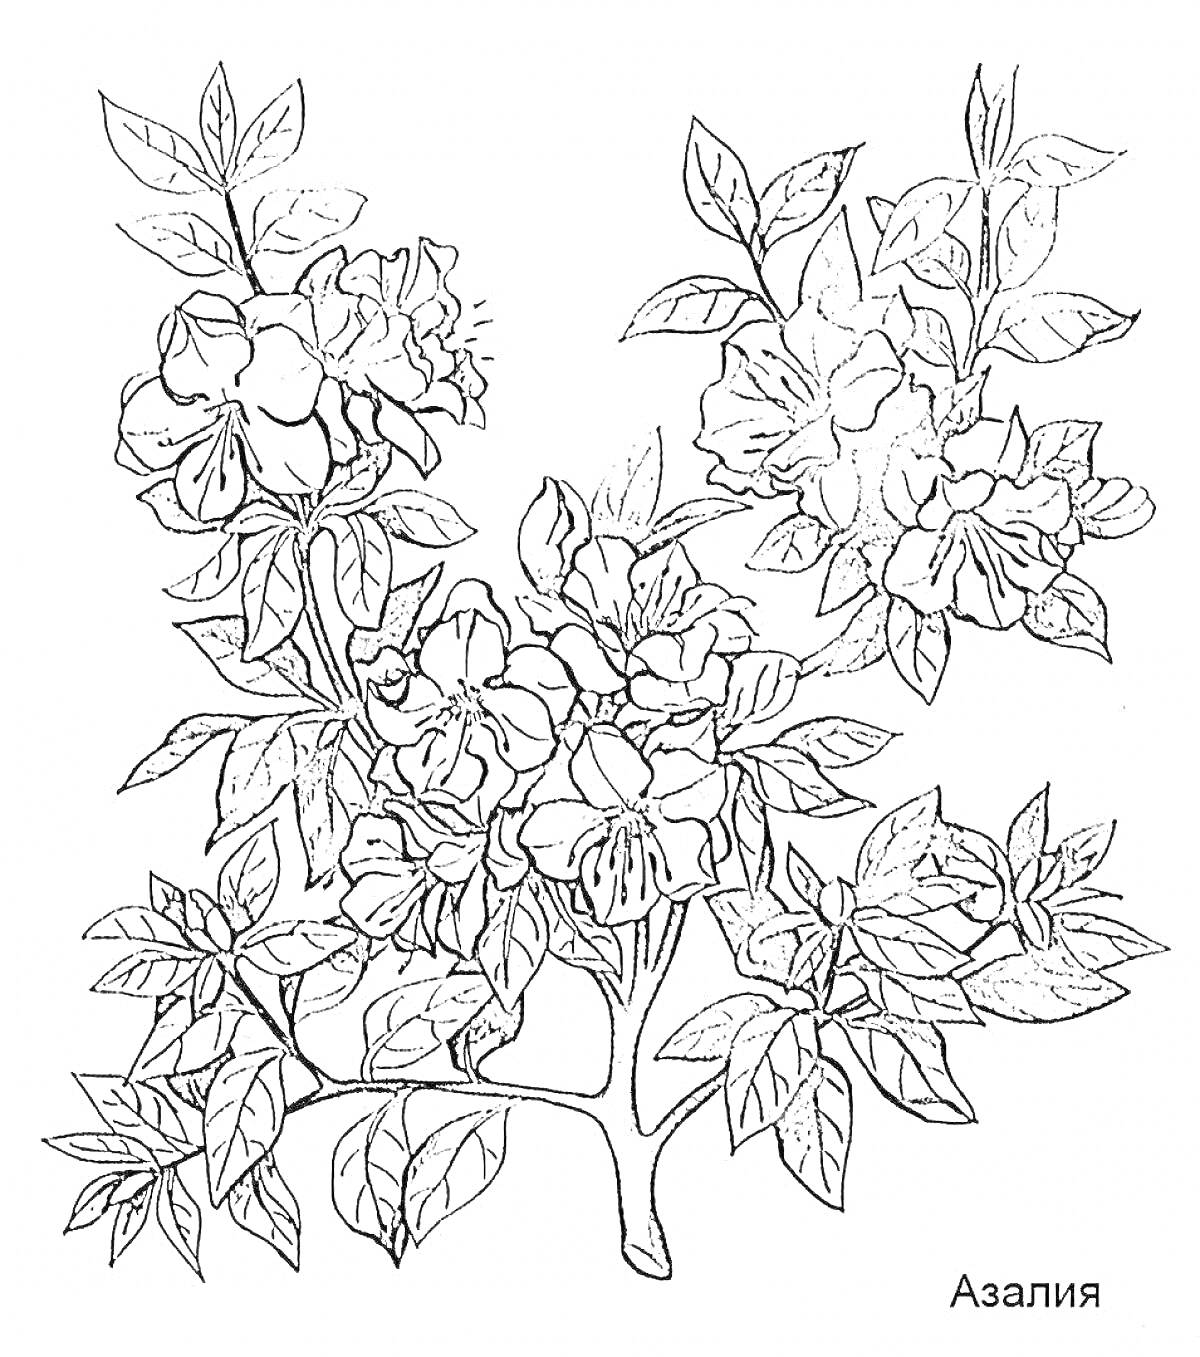 Раскраска Азалия: куст с листьями и цветами